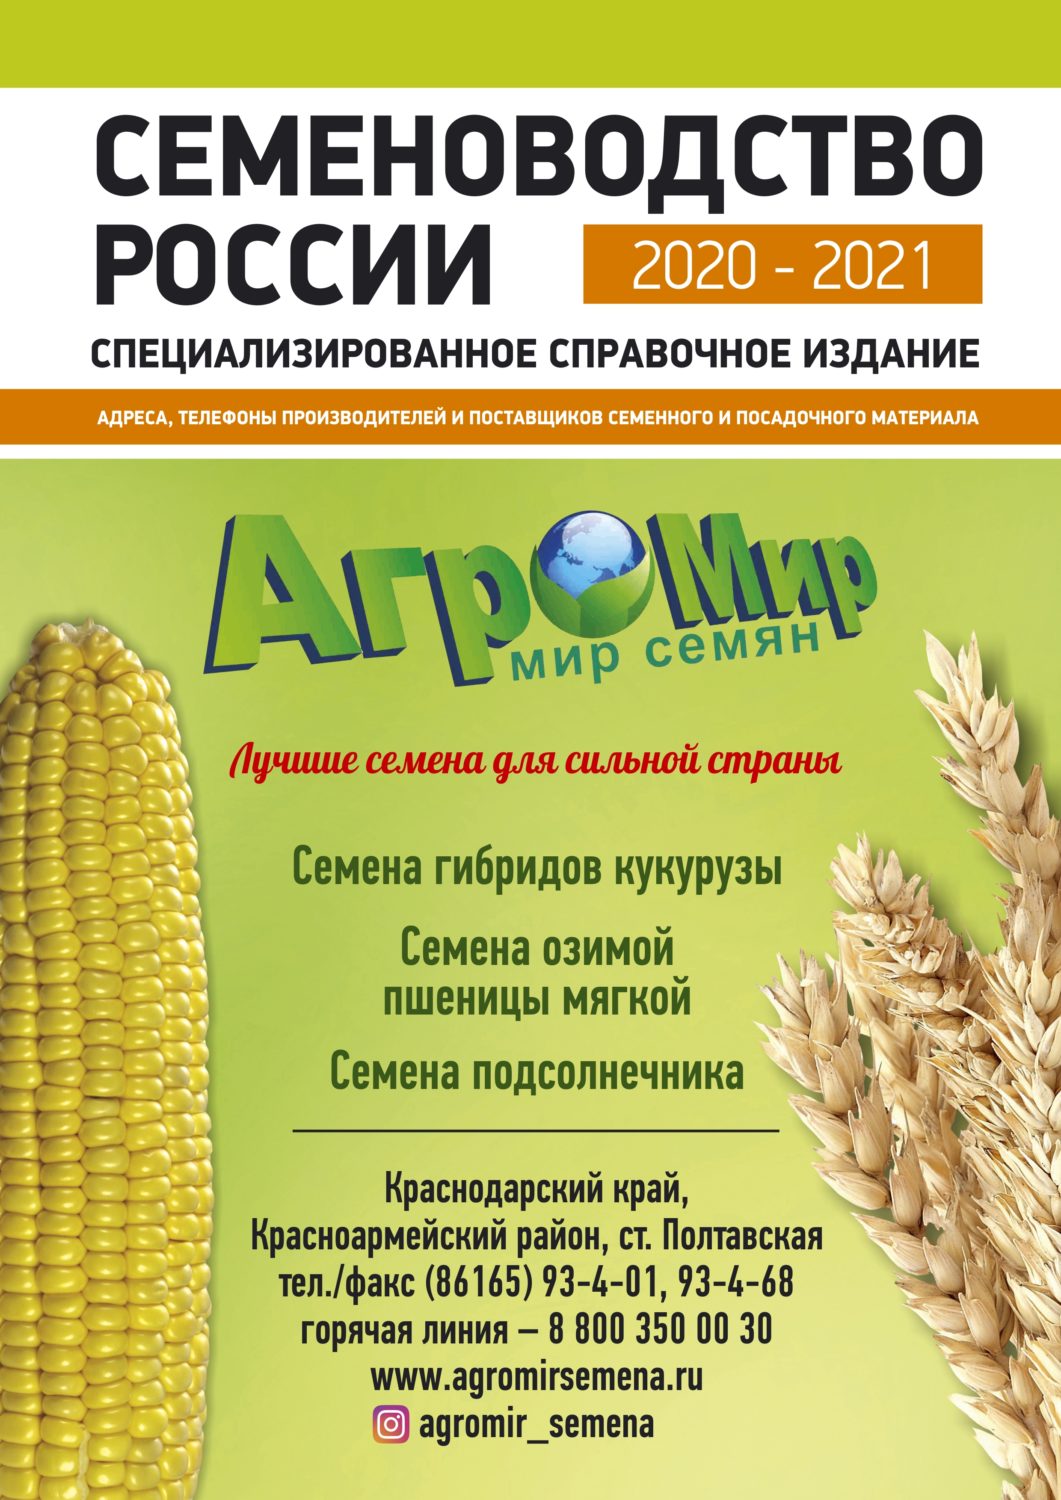 Семеноводство России 2020-2021